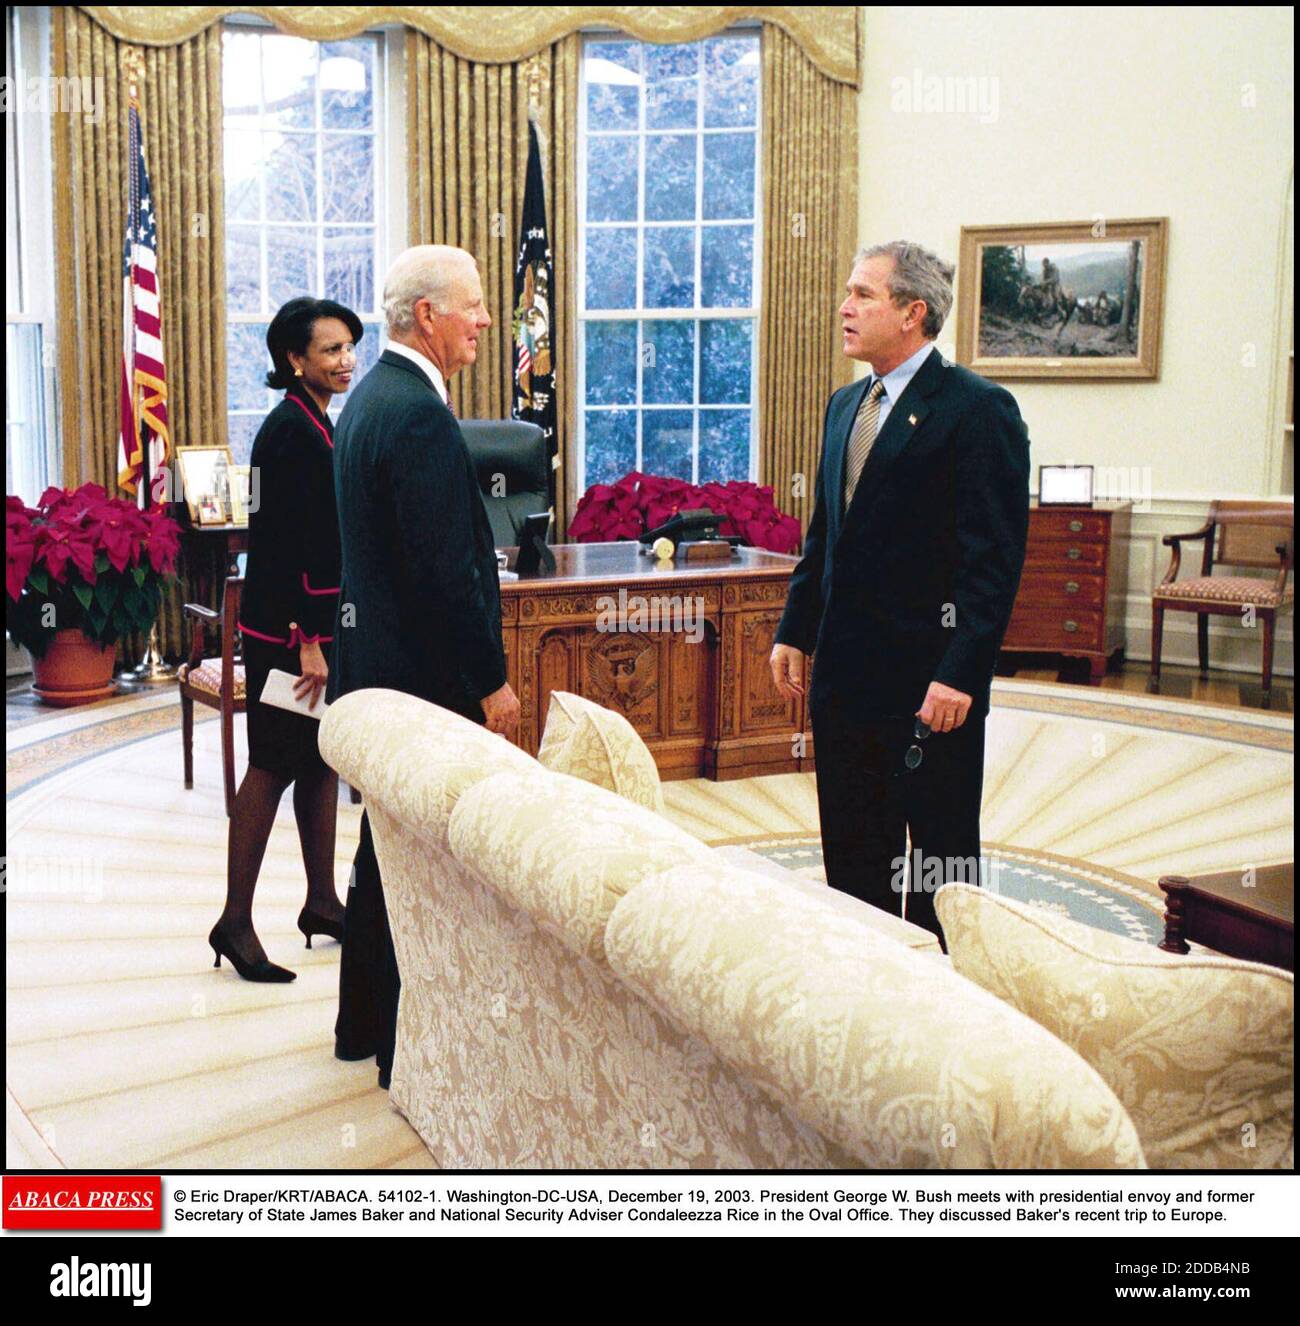 NO HAY PELÍCULA, NO HAY VIDEO, NO HAY TELEVISIÓN, NO HAY DOCUMENTAL - © ERIC DRAPER/KRT/ABACA. 54102-1. Washington-DC-USA, 19 de diciembre de 2003. El Presidente George W. Bush se reúne con el enviado presidencial y el ex Secretario de Estado James Baker y la Asesora de Seguridad Nacional Condaleezza Rice en la Oficina Oval. Hablaron de Bake Foto de stock